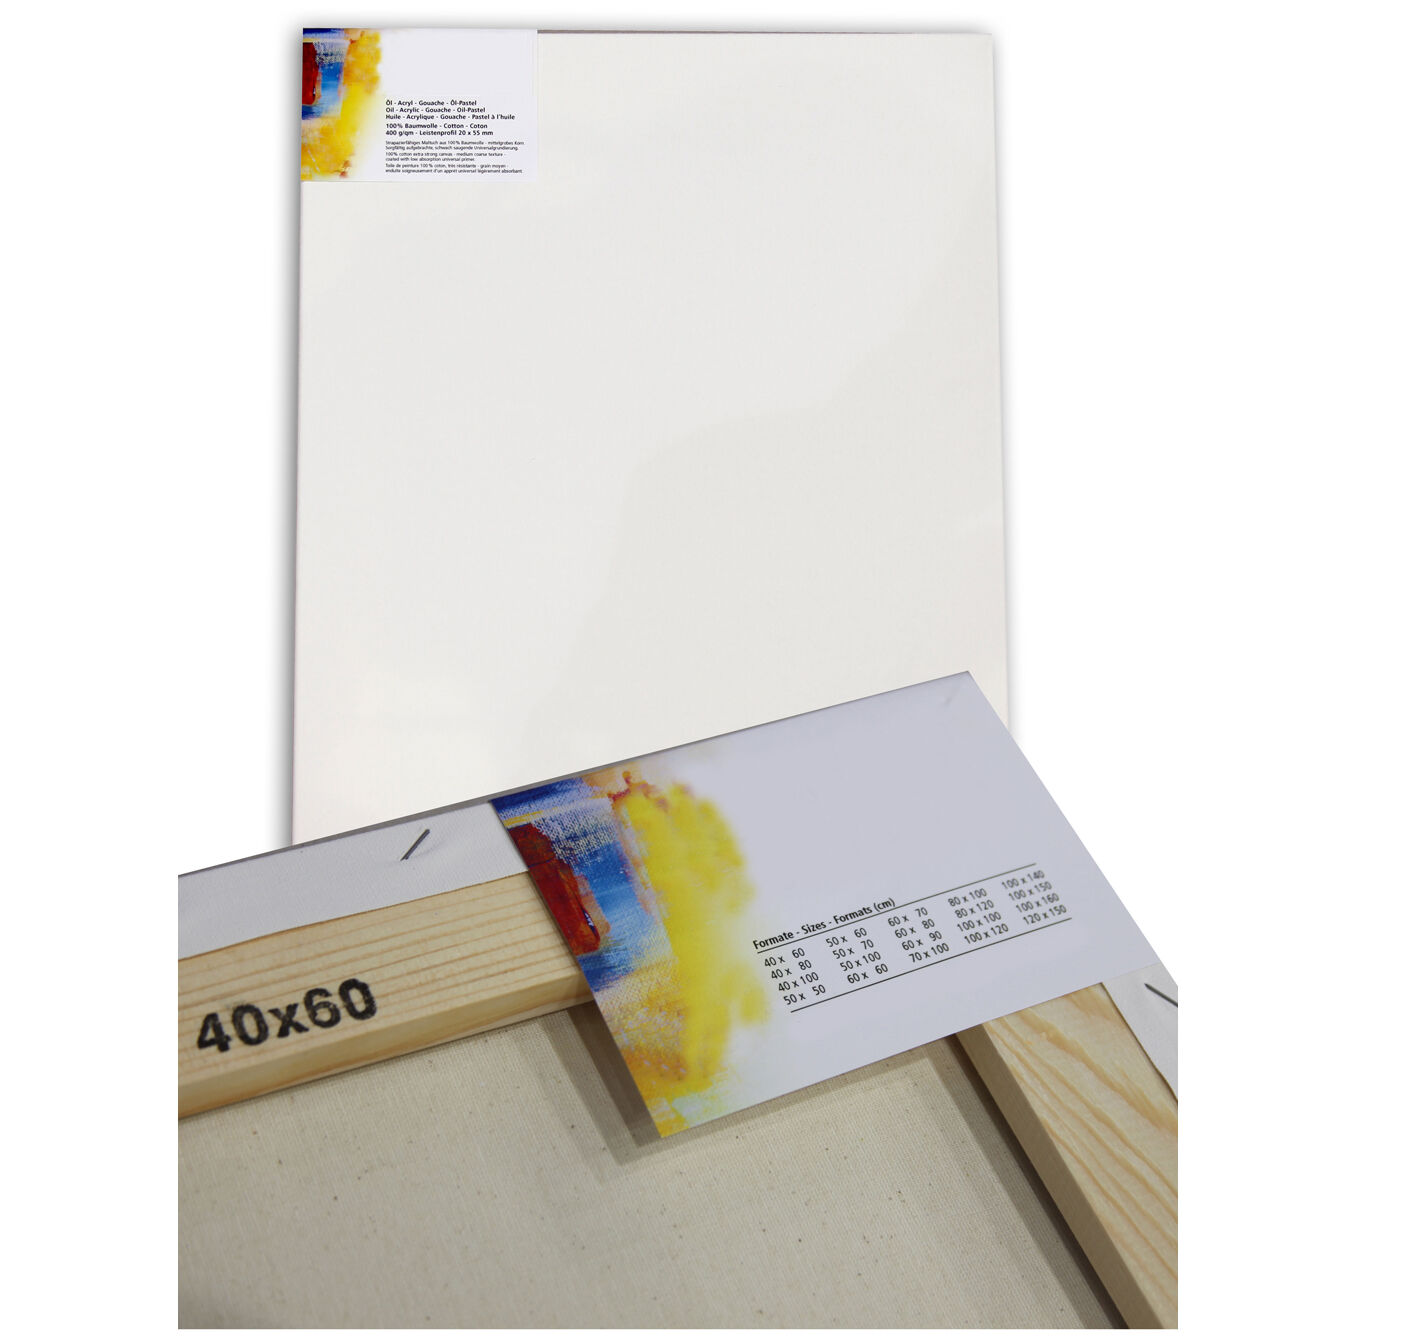 NEU Cotton 400 Premium-Keilrahmen Professionell 20mm Leistenstärke, 70 x 80 cm - 1 Stück Bild 2